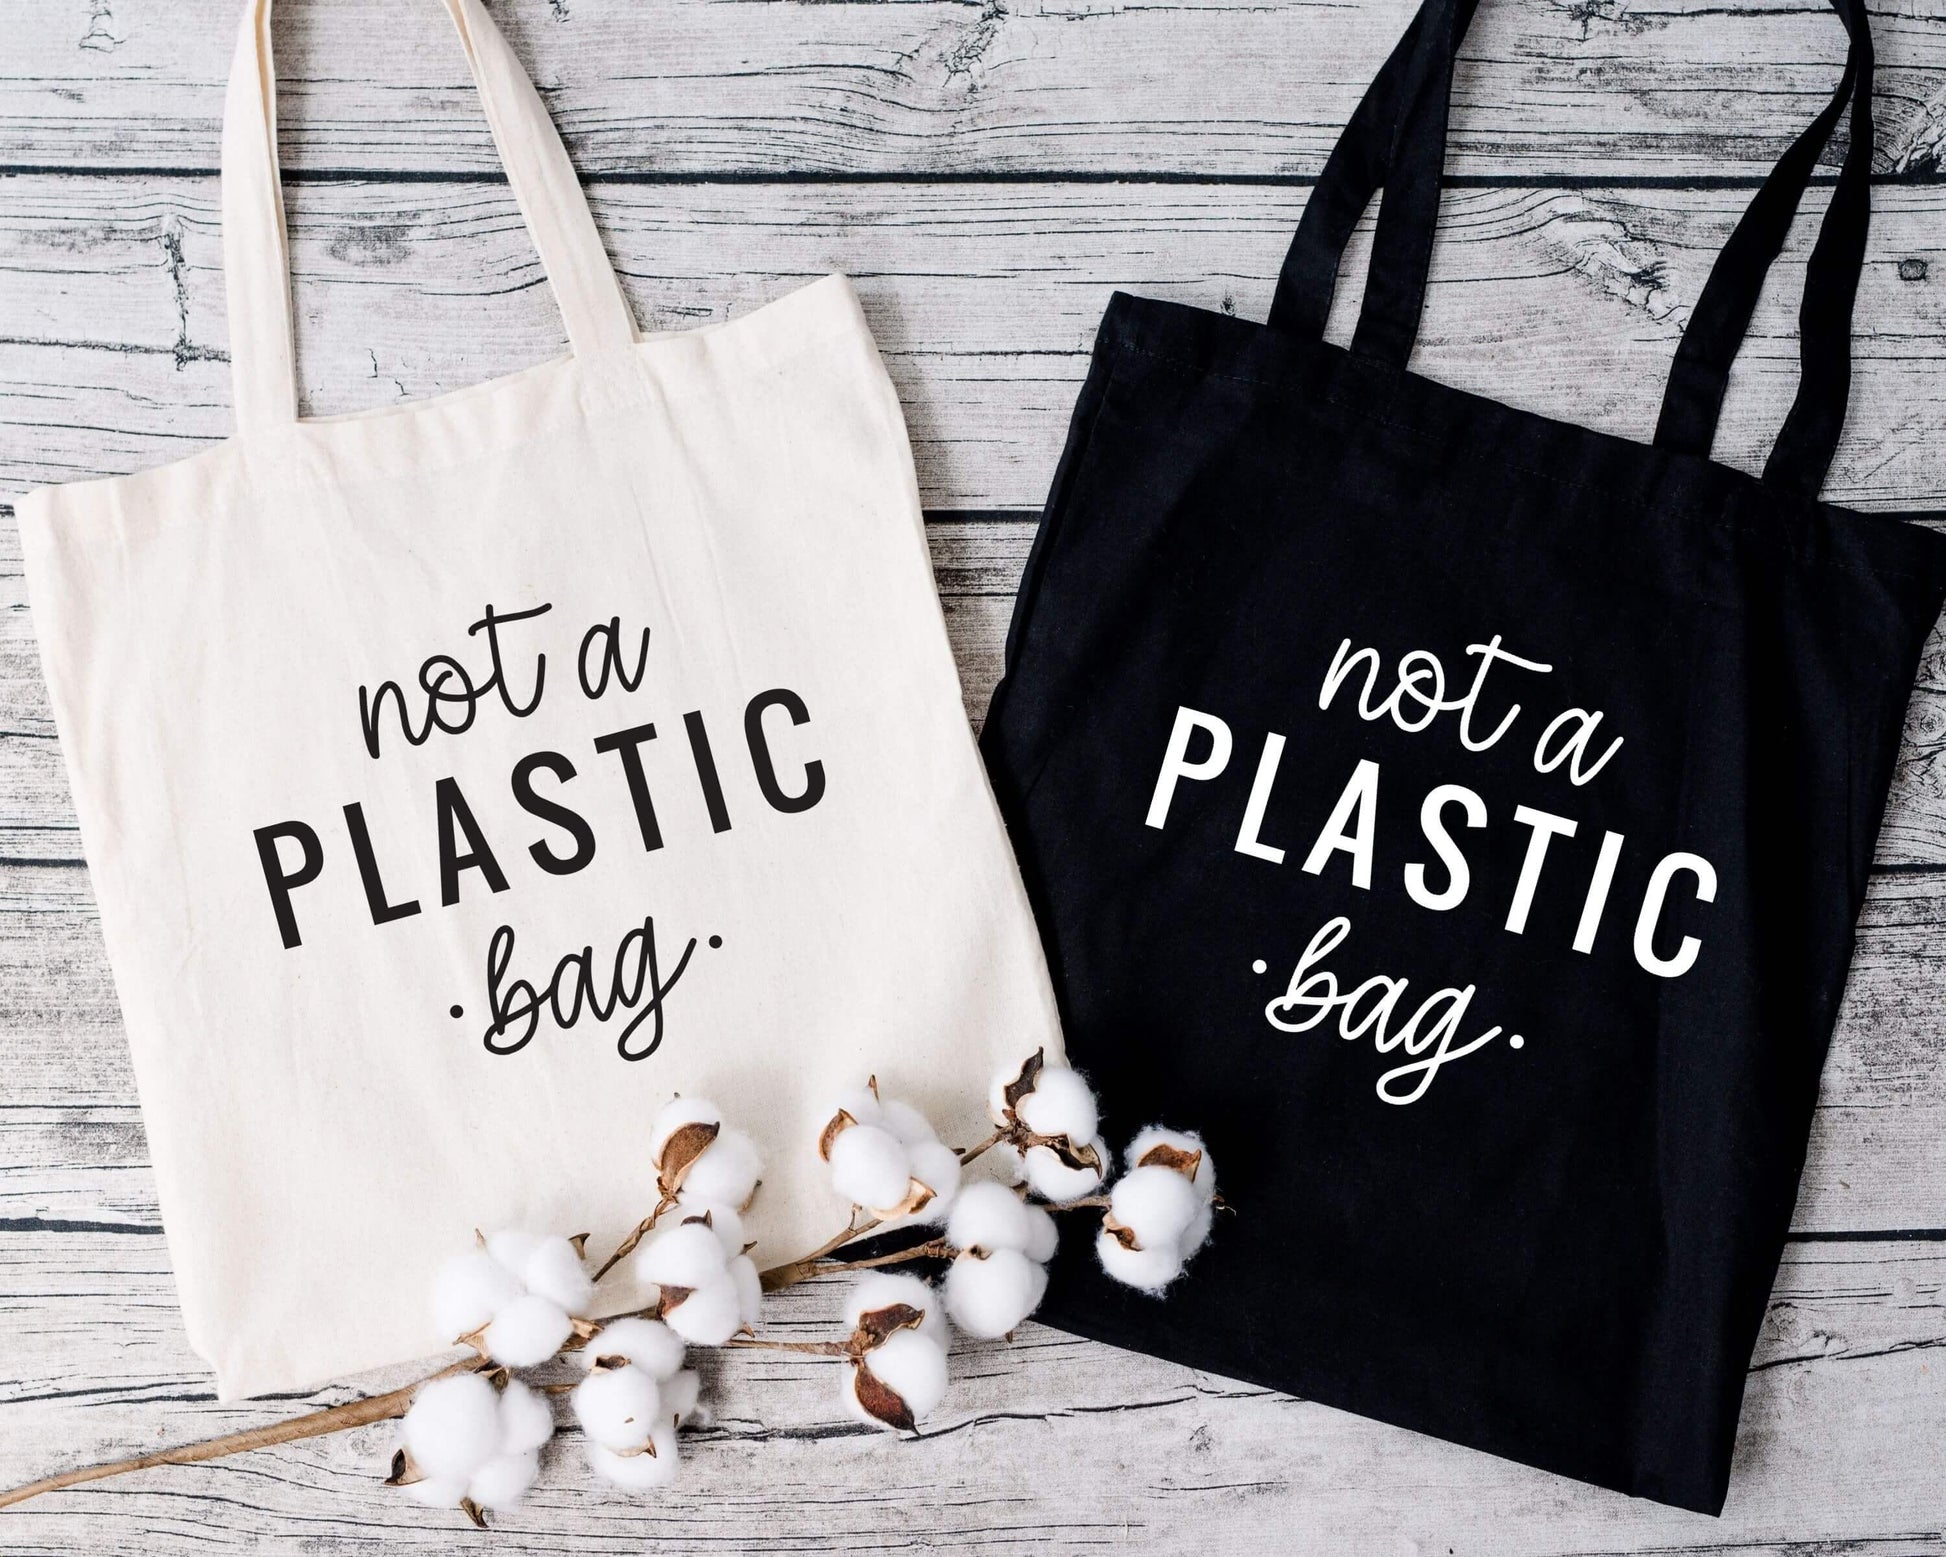 Not a Plastic Bag Tote Bag - Crystal Rose Design Co.